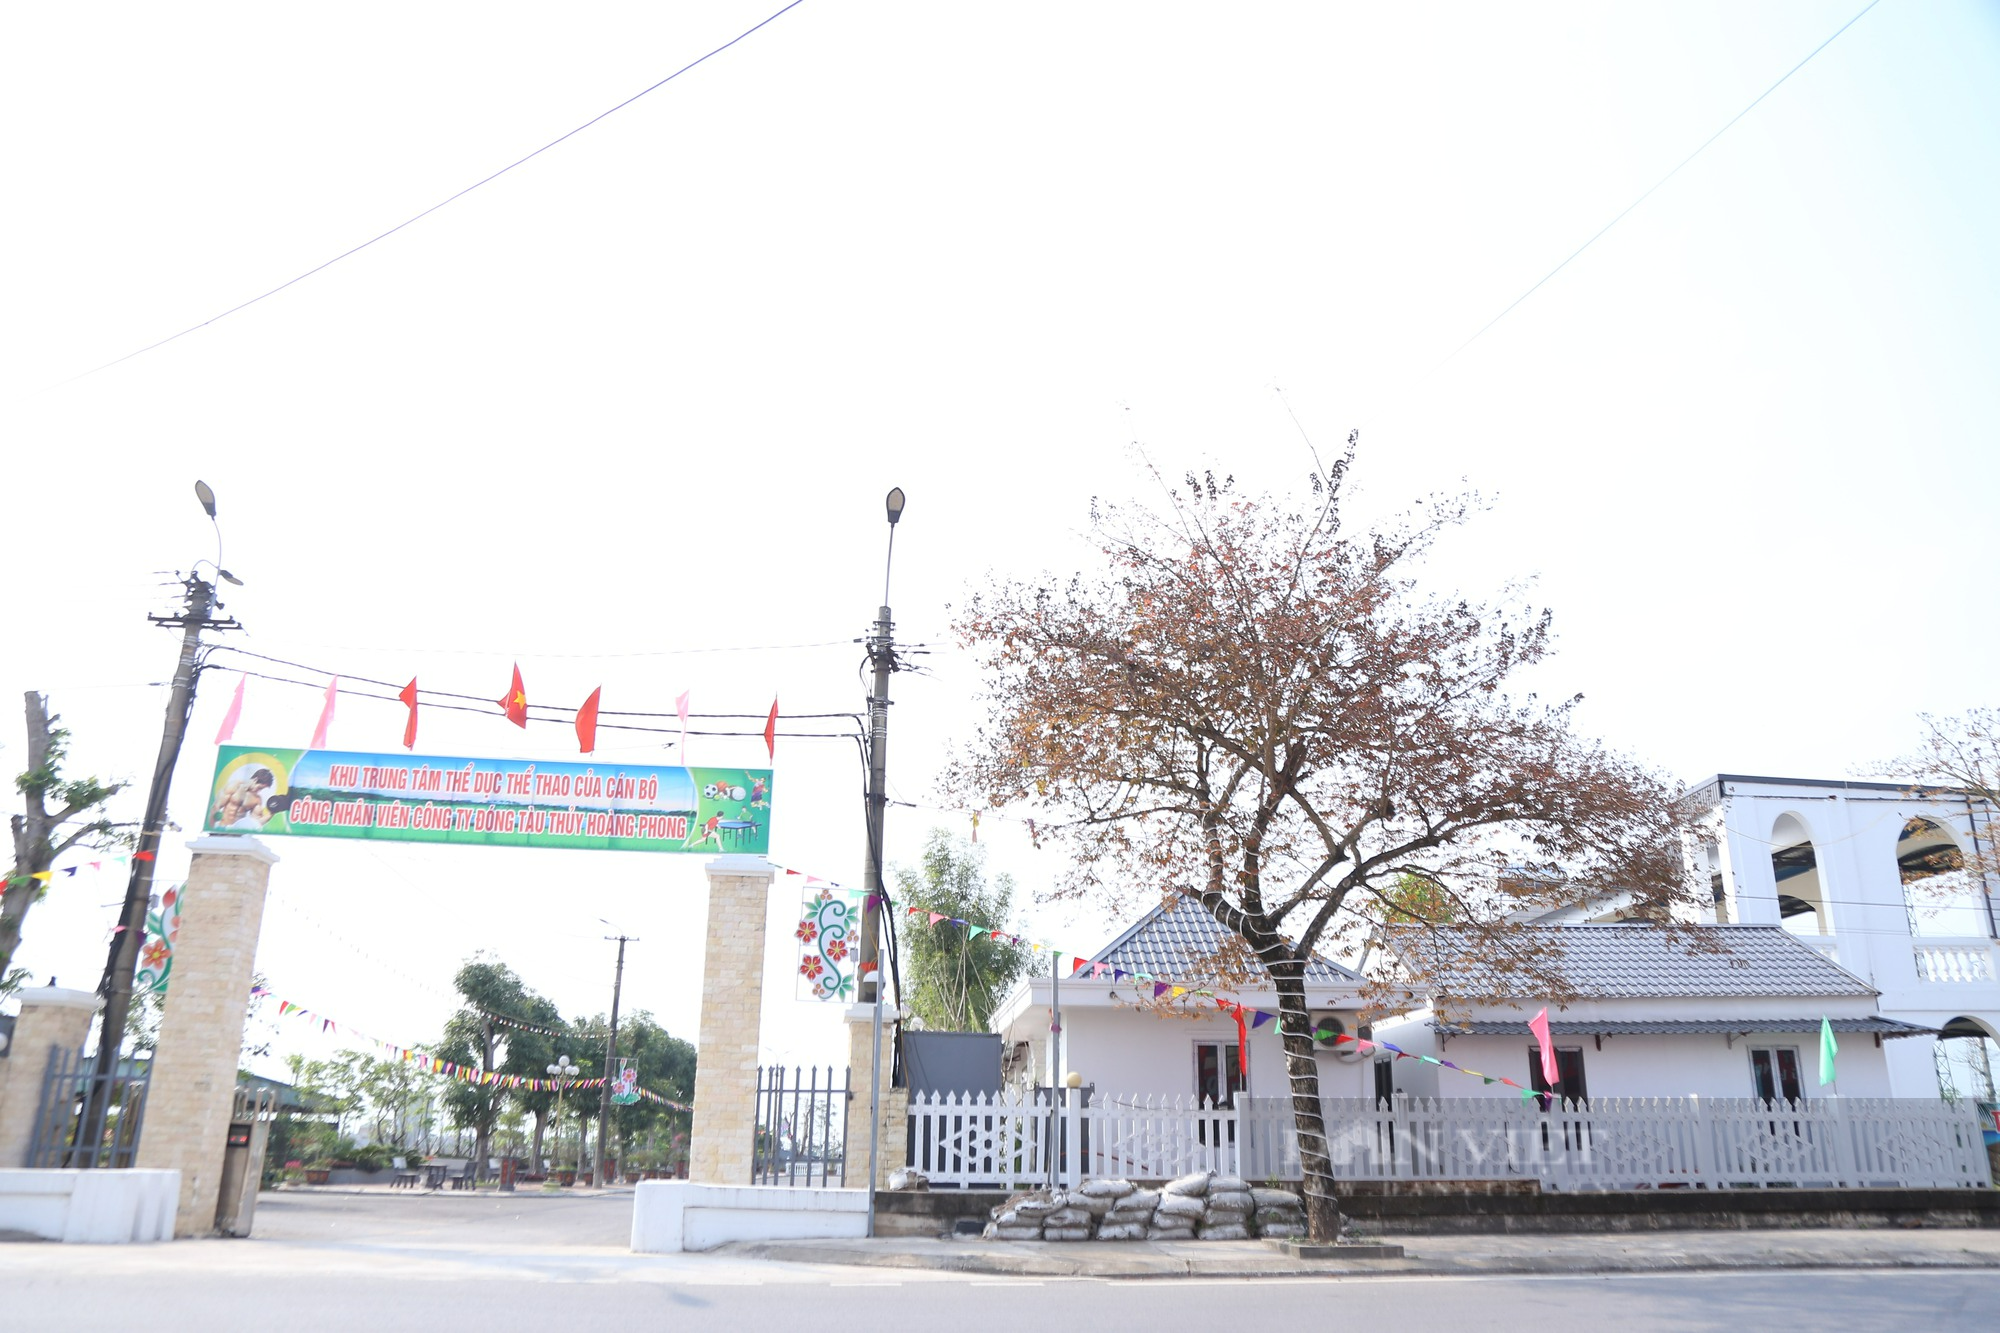 Trung tâm thể dục thể thao “mọc” trên bãi sông tại Nam Định, 18 lần lập biên bản “cho có” - Ảnh 1.